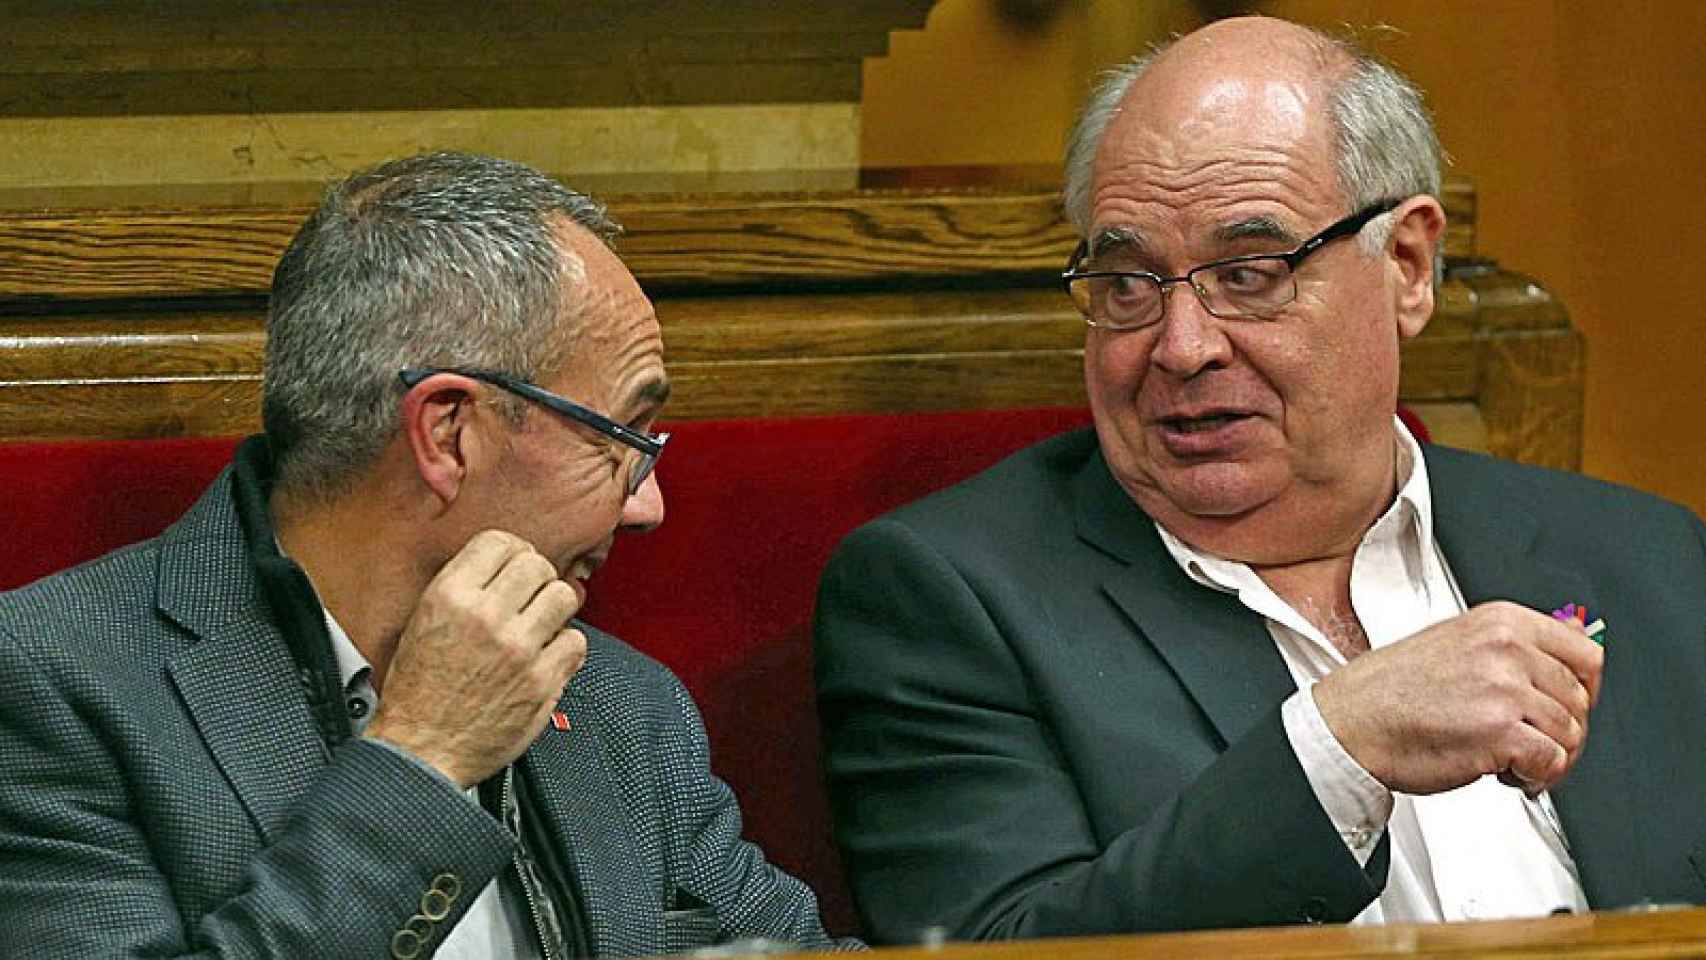 Joan Coscubiela (i) y Lluís Rabell (D), exdiputados de Catalunya Sí que es Pot en el Parlament / EFE